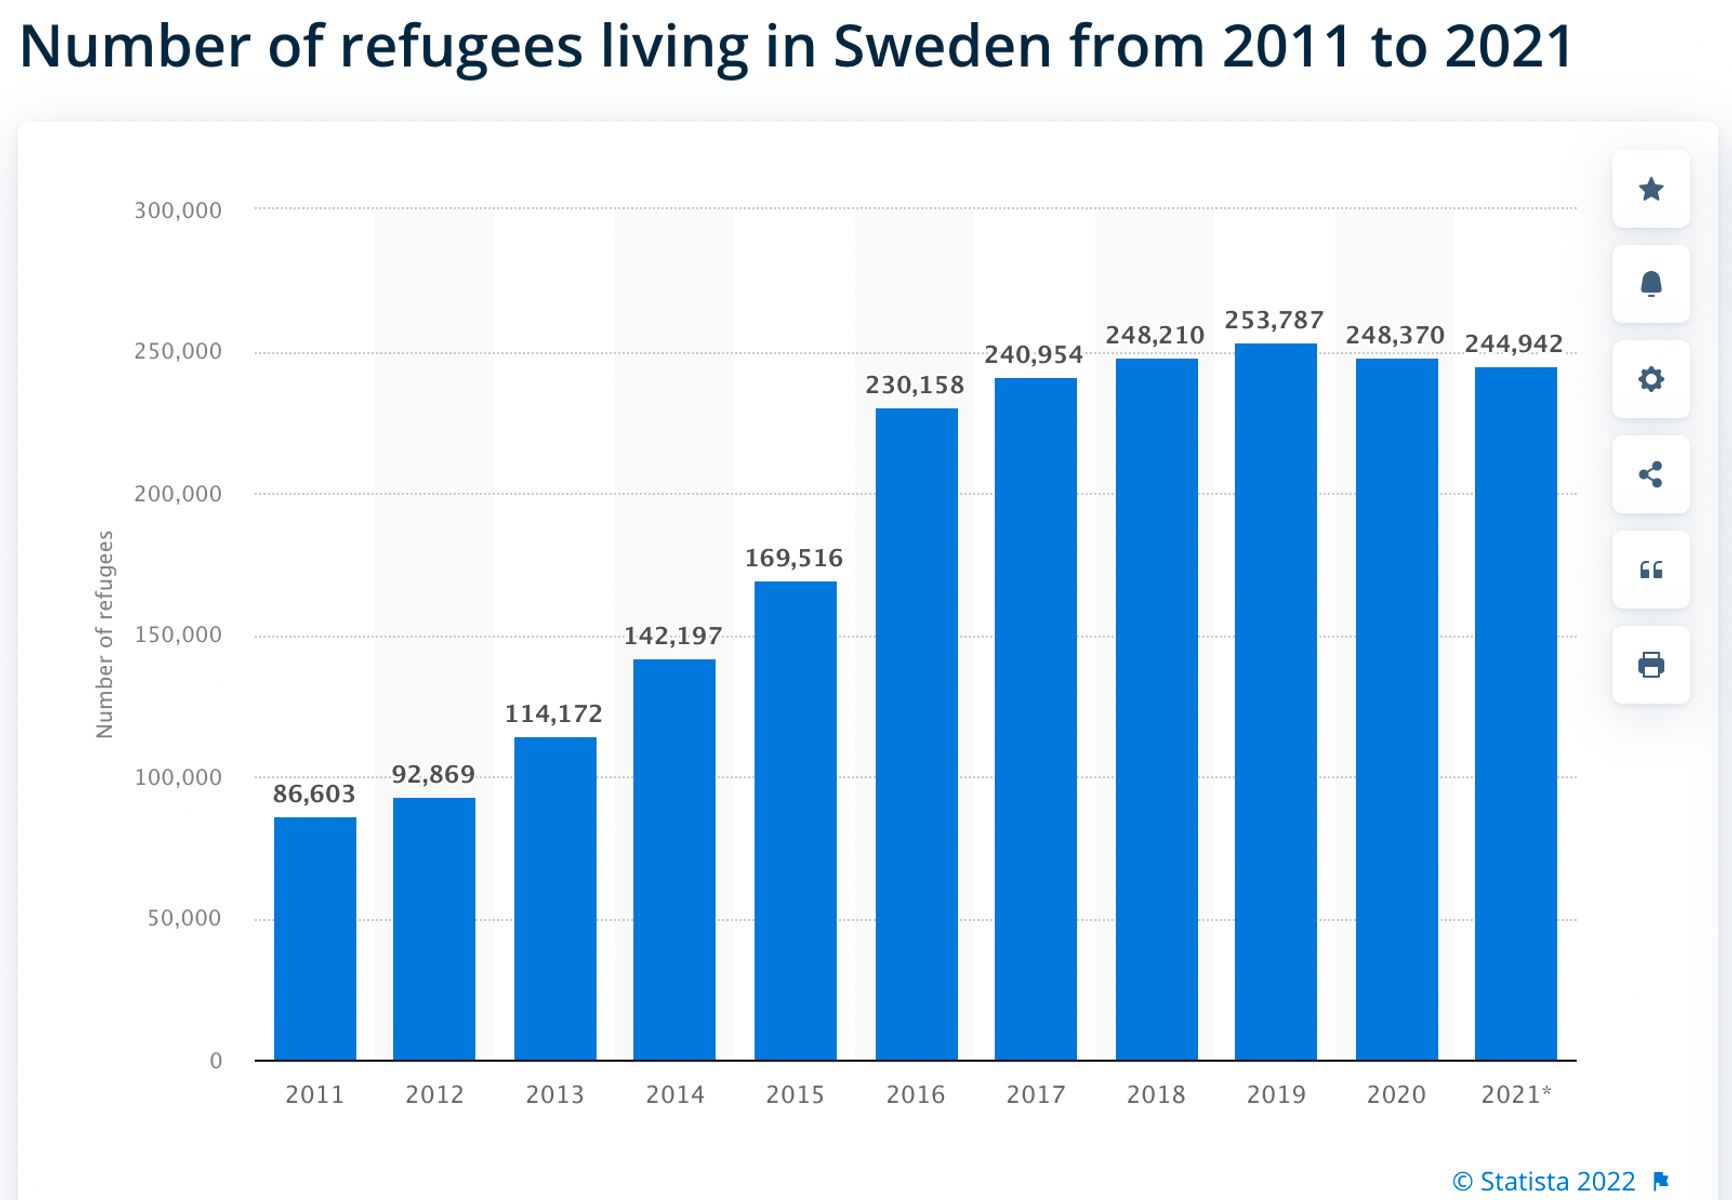 Число беженцев (тыс. человек) в Швеции с 2011 по 2021 год. Видно небольшое снижение показателей в годы пандемии коронавируса, до нападения России на Украину